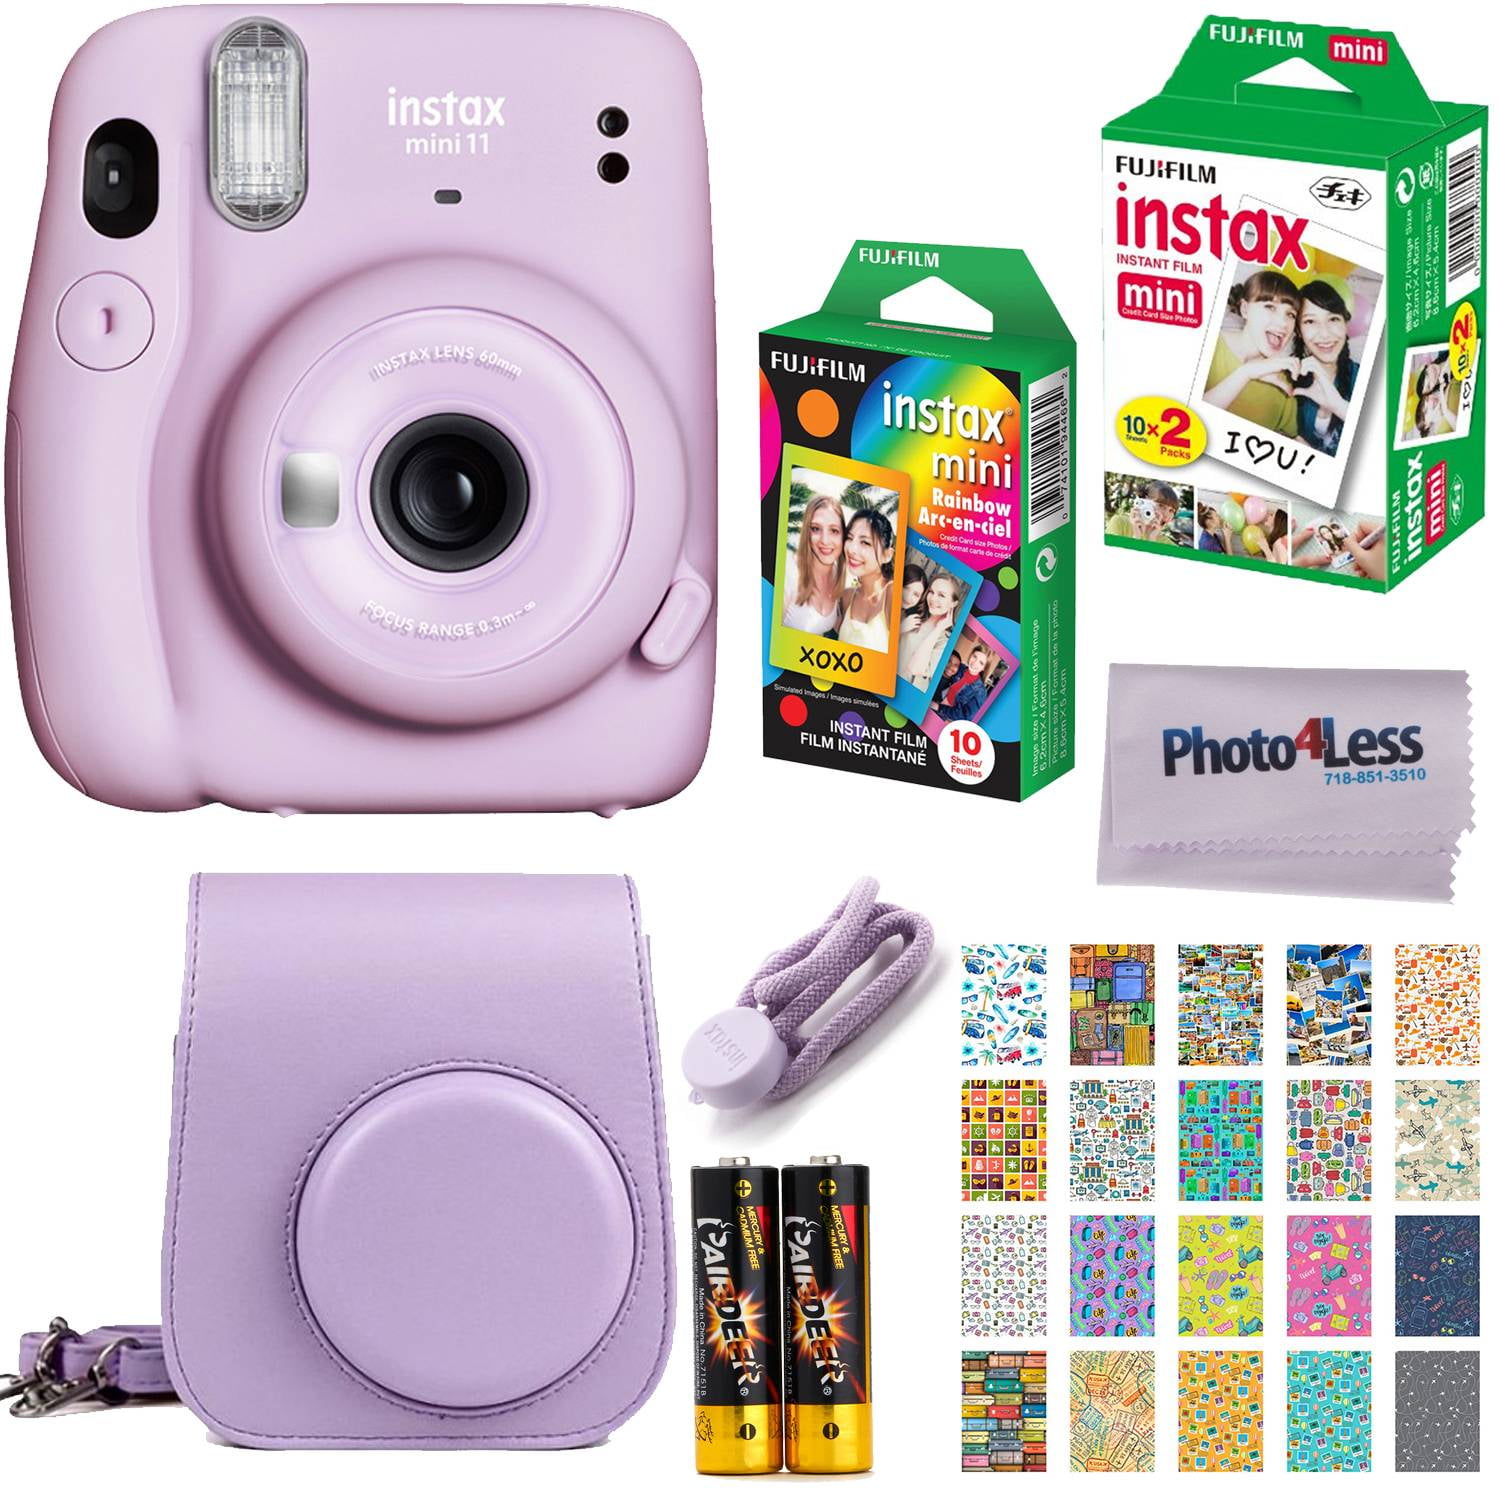 Fujifilm Instax Mini 11 Instant Camera (Lilac Purple) | Twin Pack Film | Rainbow Film Case | Stickers - Complete Kit Walmart.com